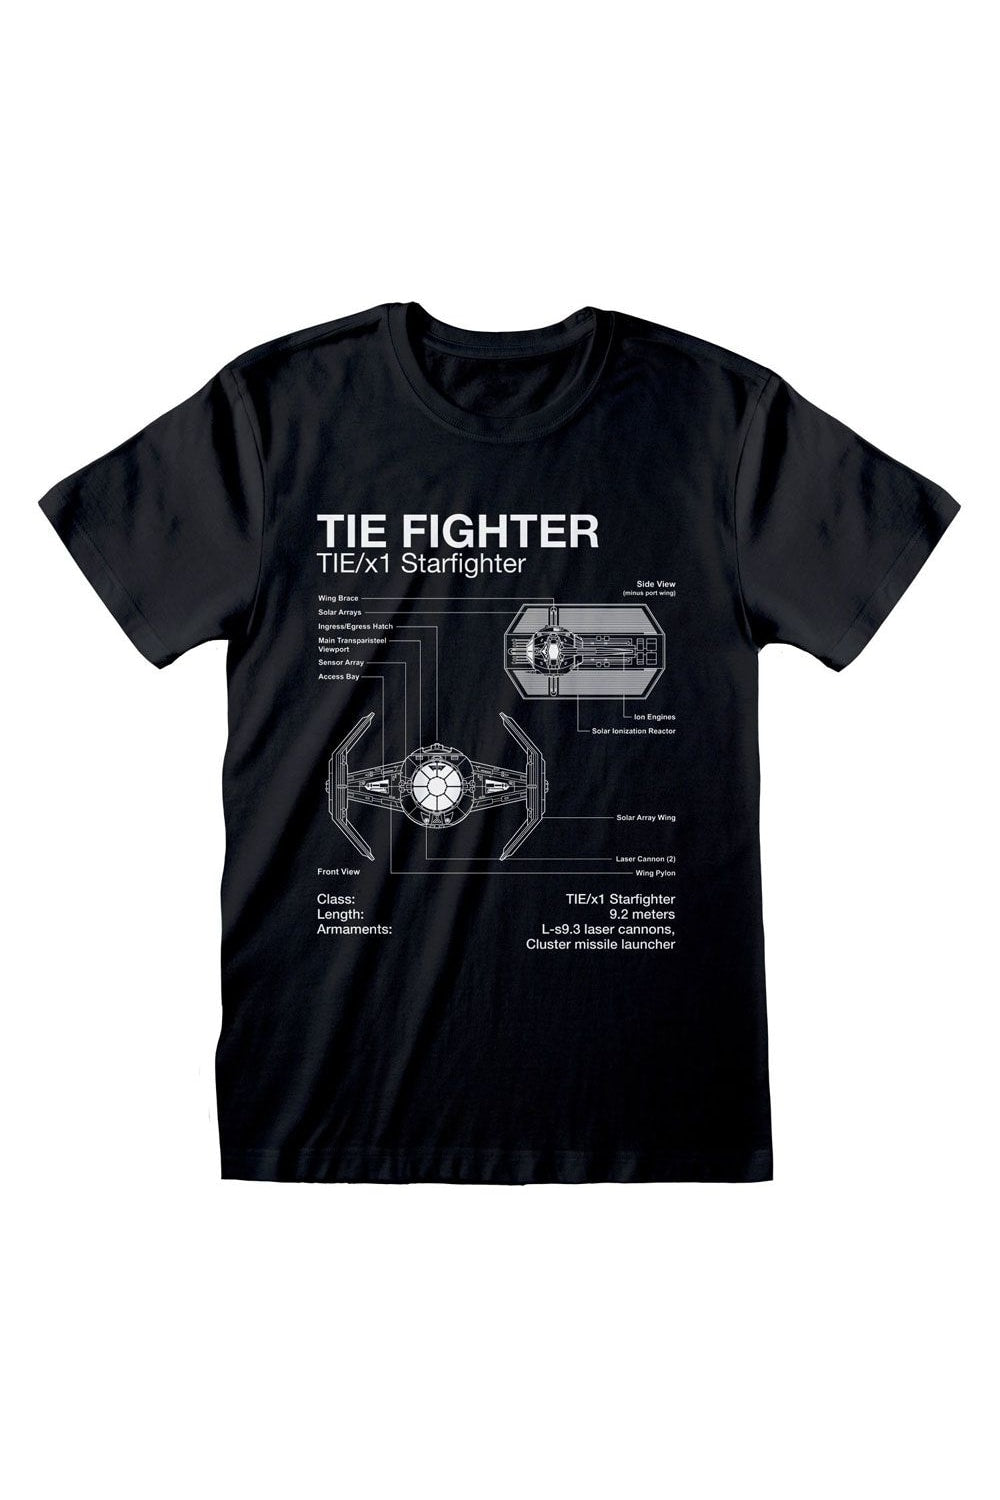 Star Wars Unisex Adult Tie Fighter T-Shirt (Black)